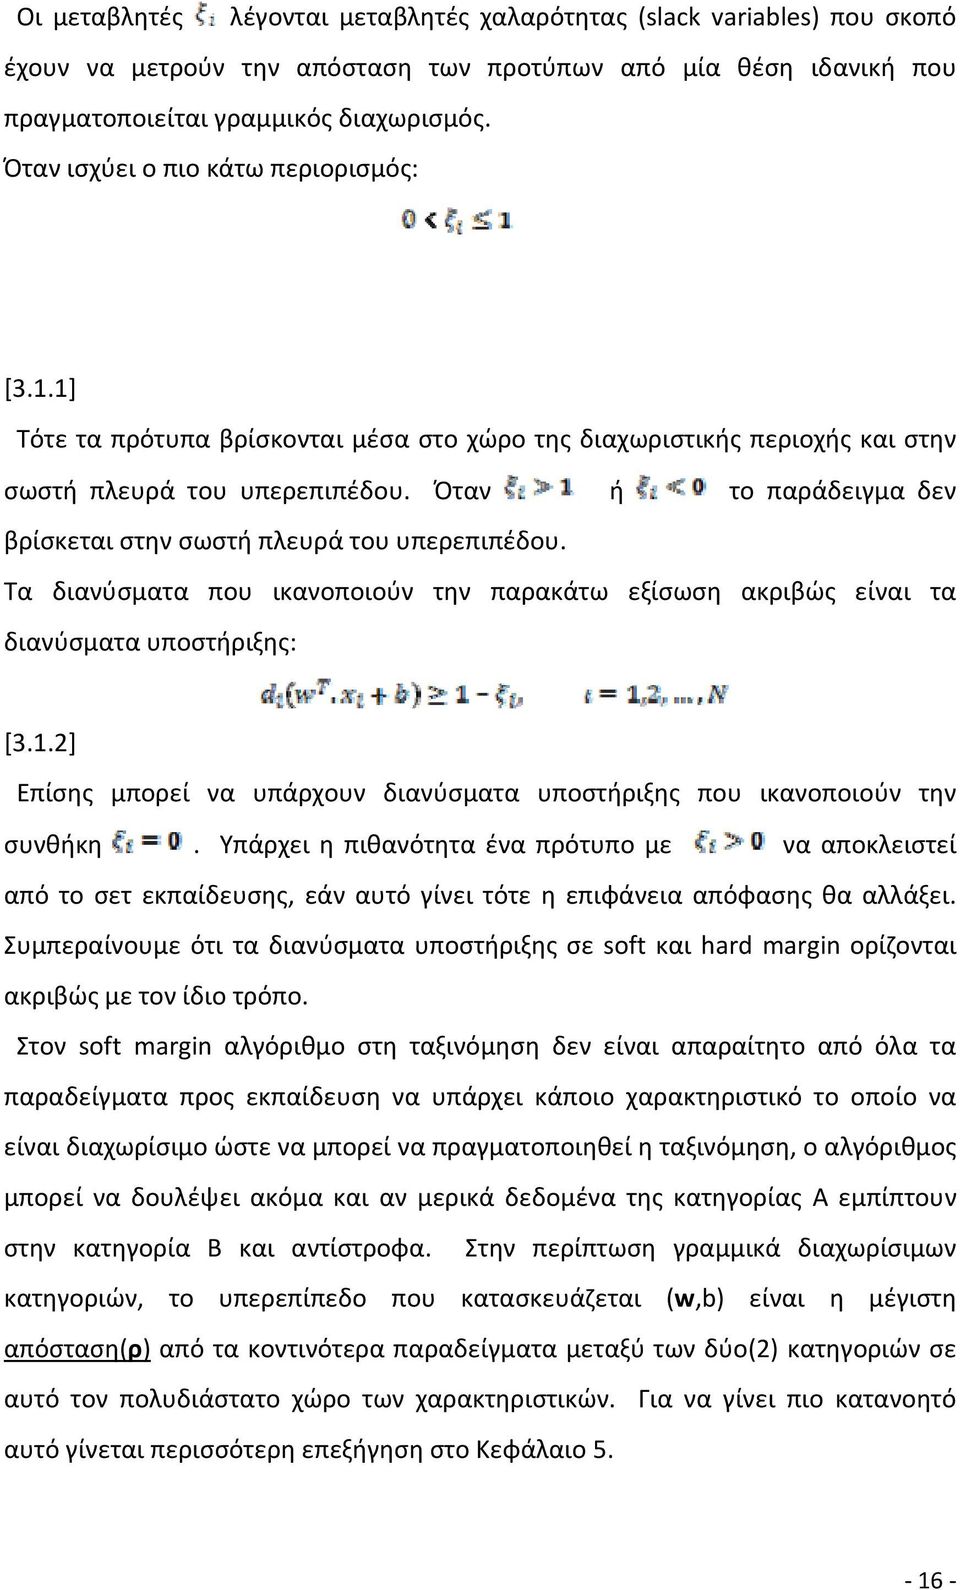 Όταν ή το παράδειγμα δεν βρίσκεται στην σωστή πλευρά του υπερεπιπέδου. Τα διανύσματα που ικανοποιούν την παρακάτω εξίσωση ακριβώς είναι τα διανύσματα υποστήριξης: [3.1.